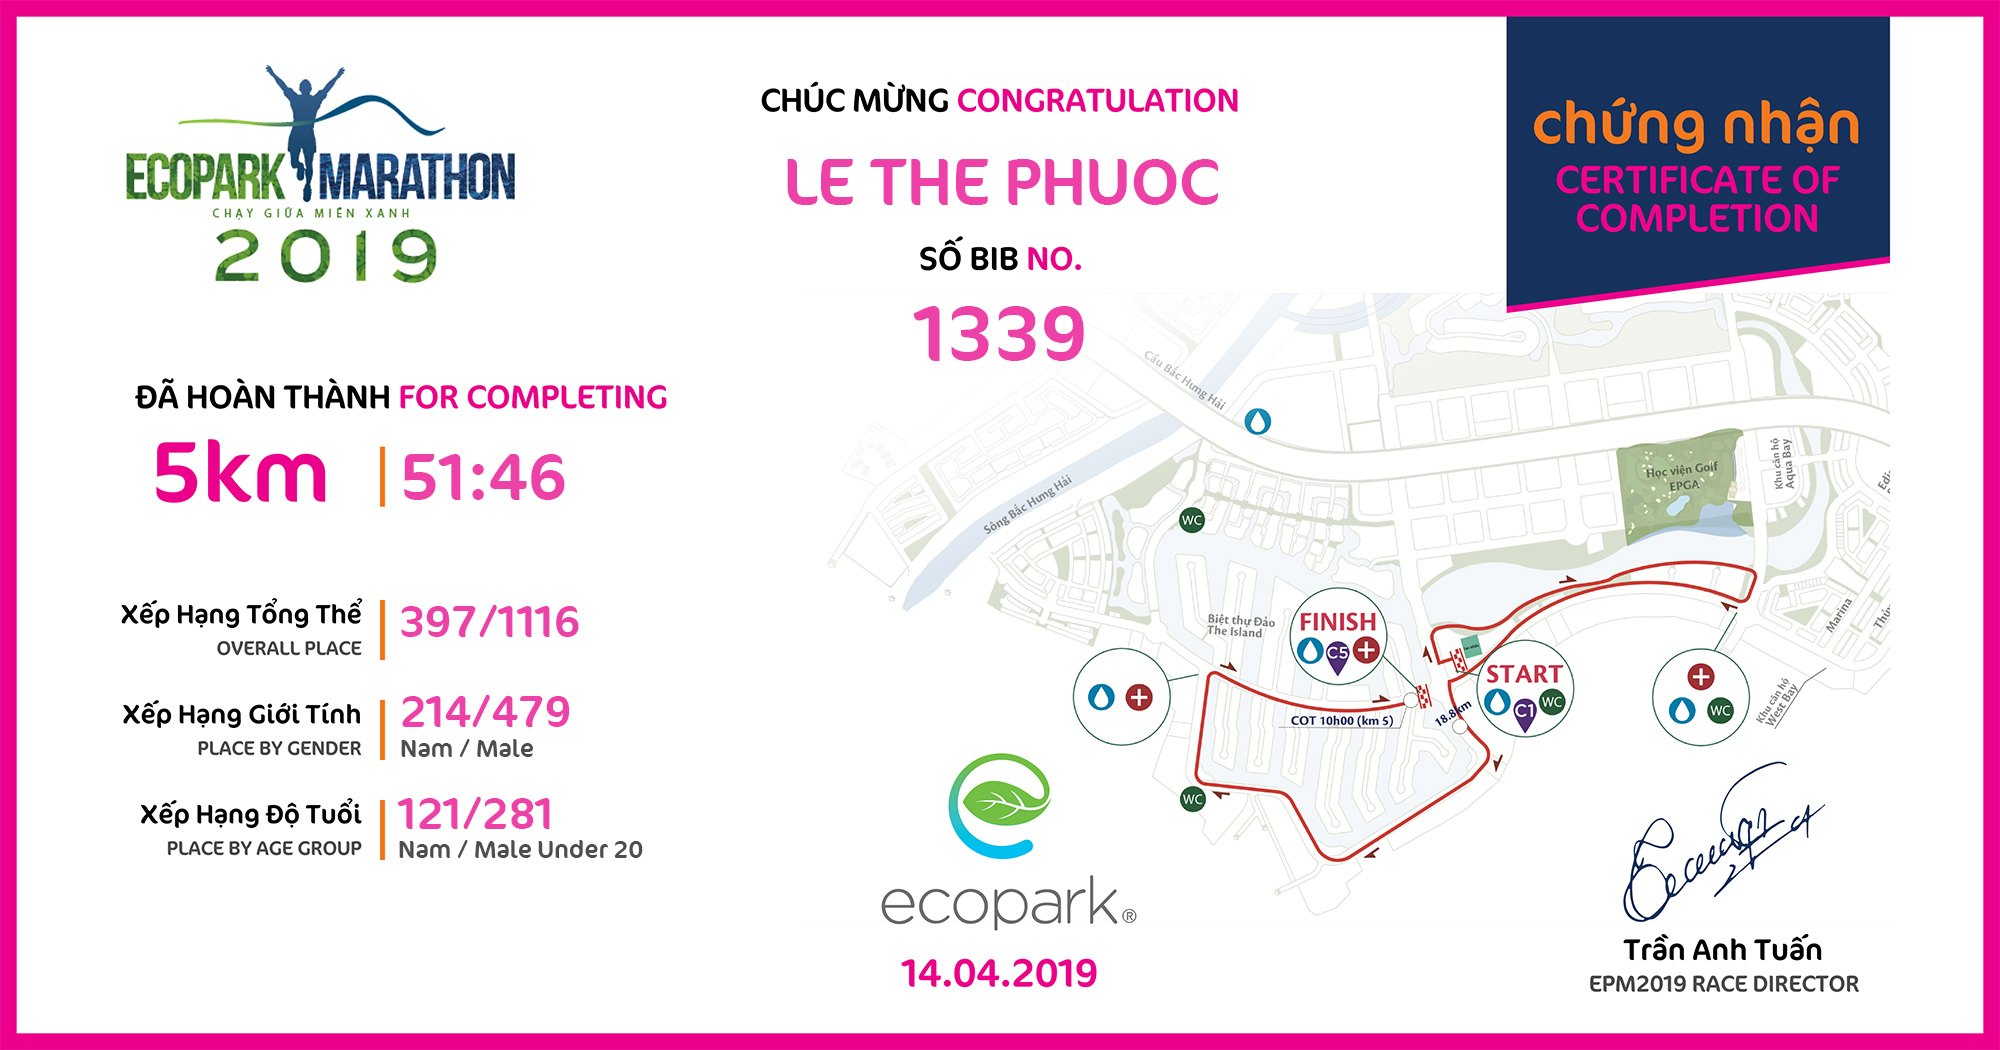 1339 - Le The Phuoc